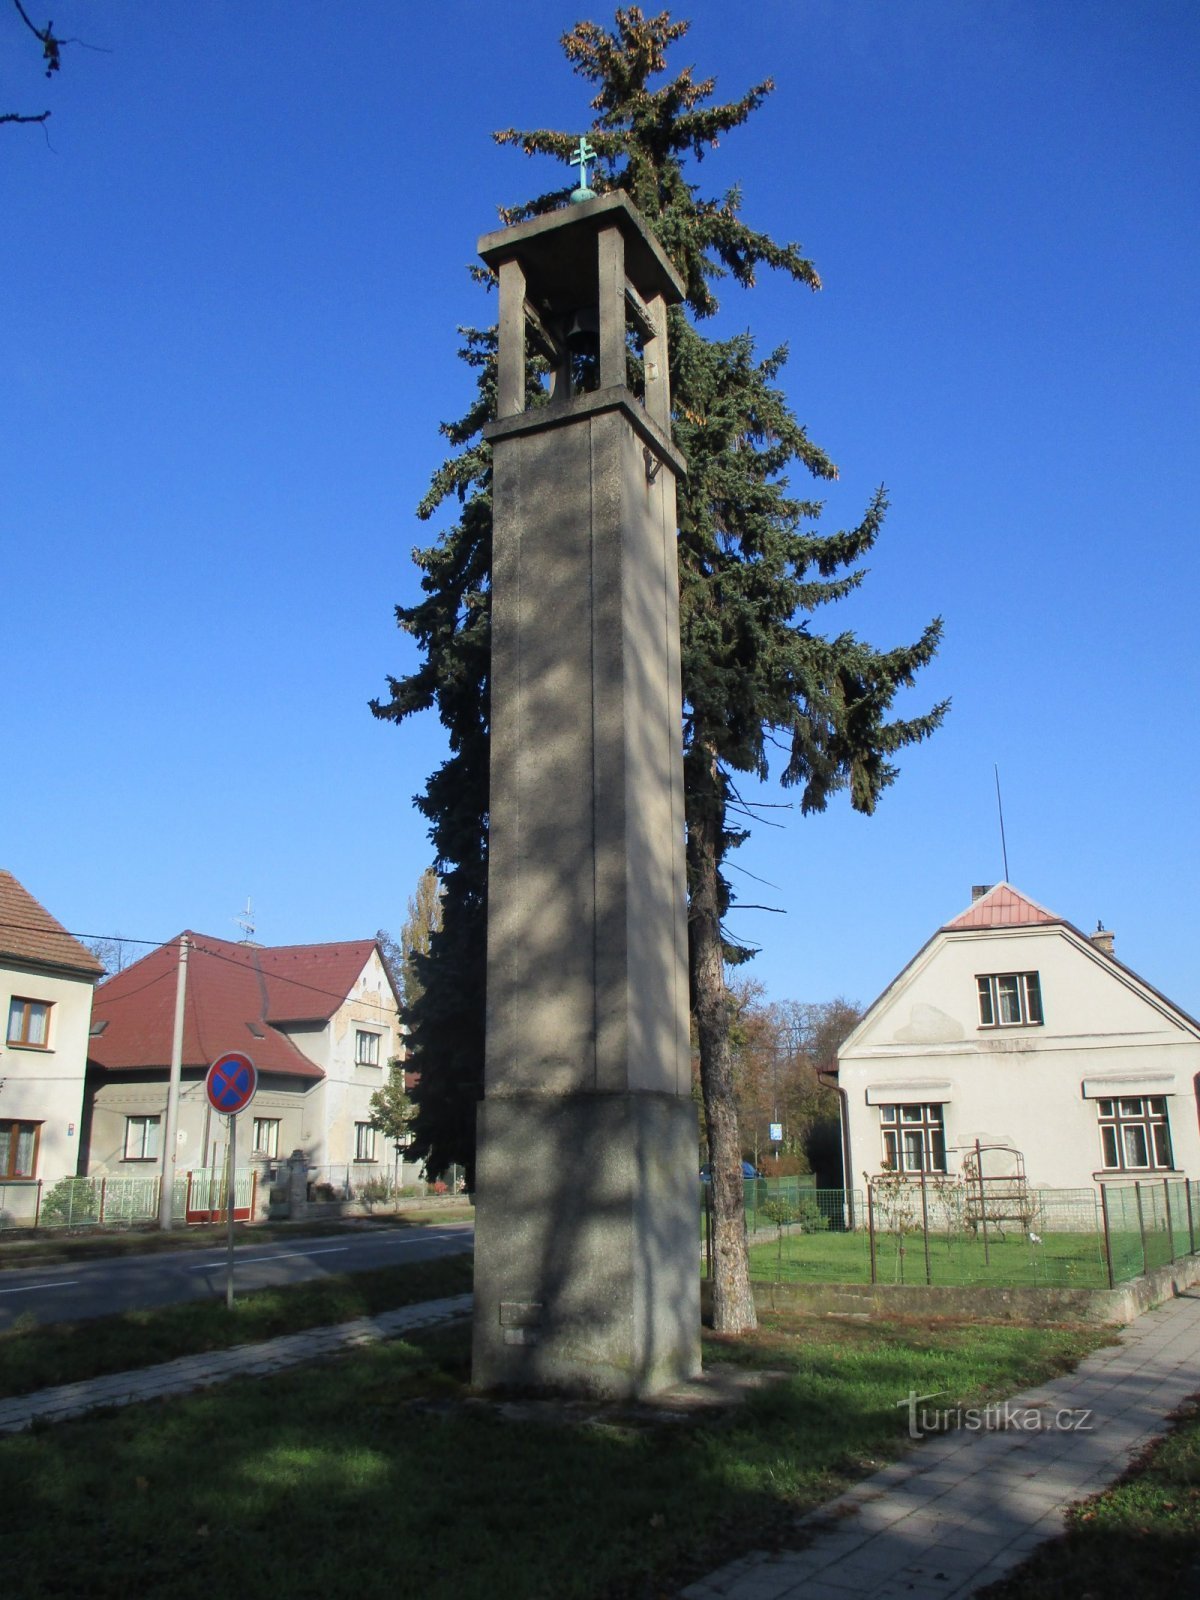 Tháp chuông Nhà thờ Tiệp Khắc ở Pouchov (Hradec Králové)